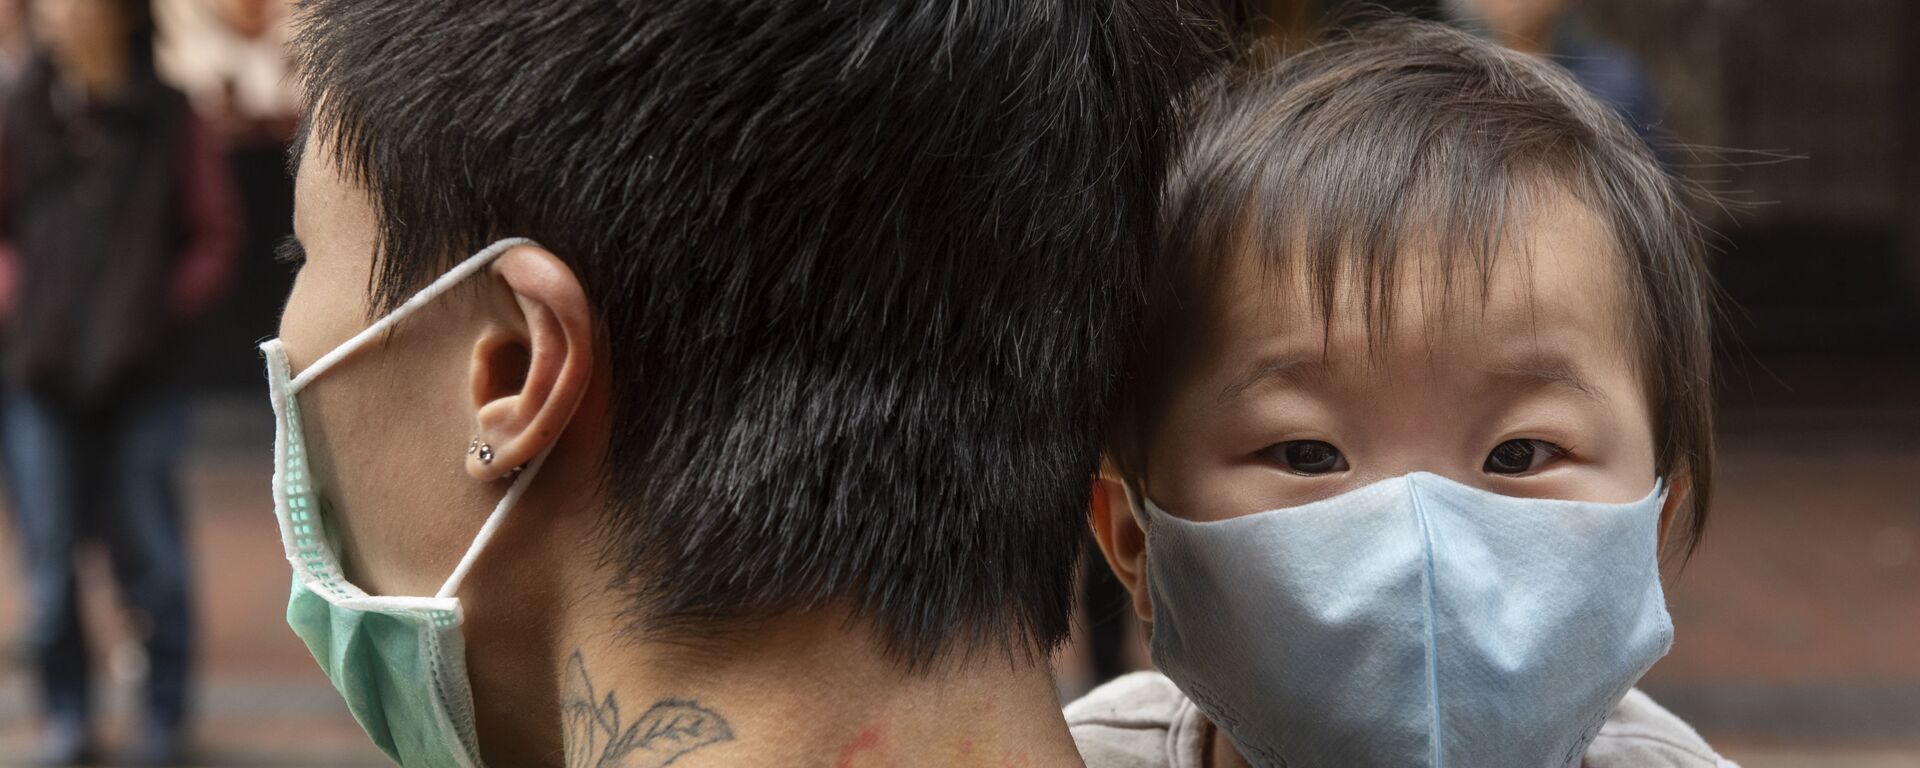 Ребенок в защитной маске на руках отца на одной из улиц в Гонконге - Sputnik Արմենիա, 1920, 16.02.2021